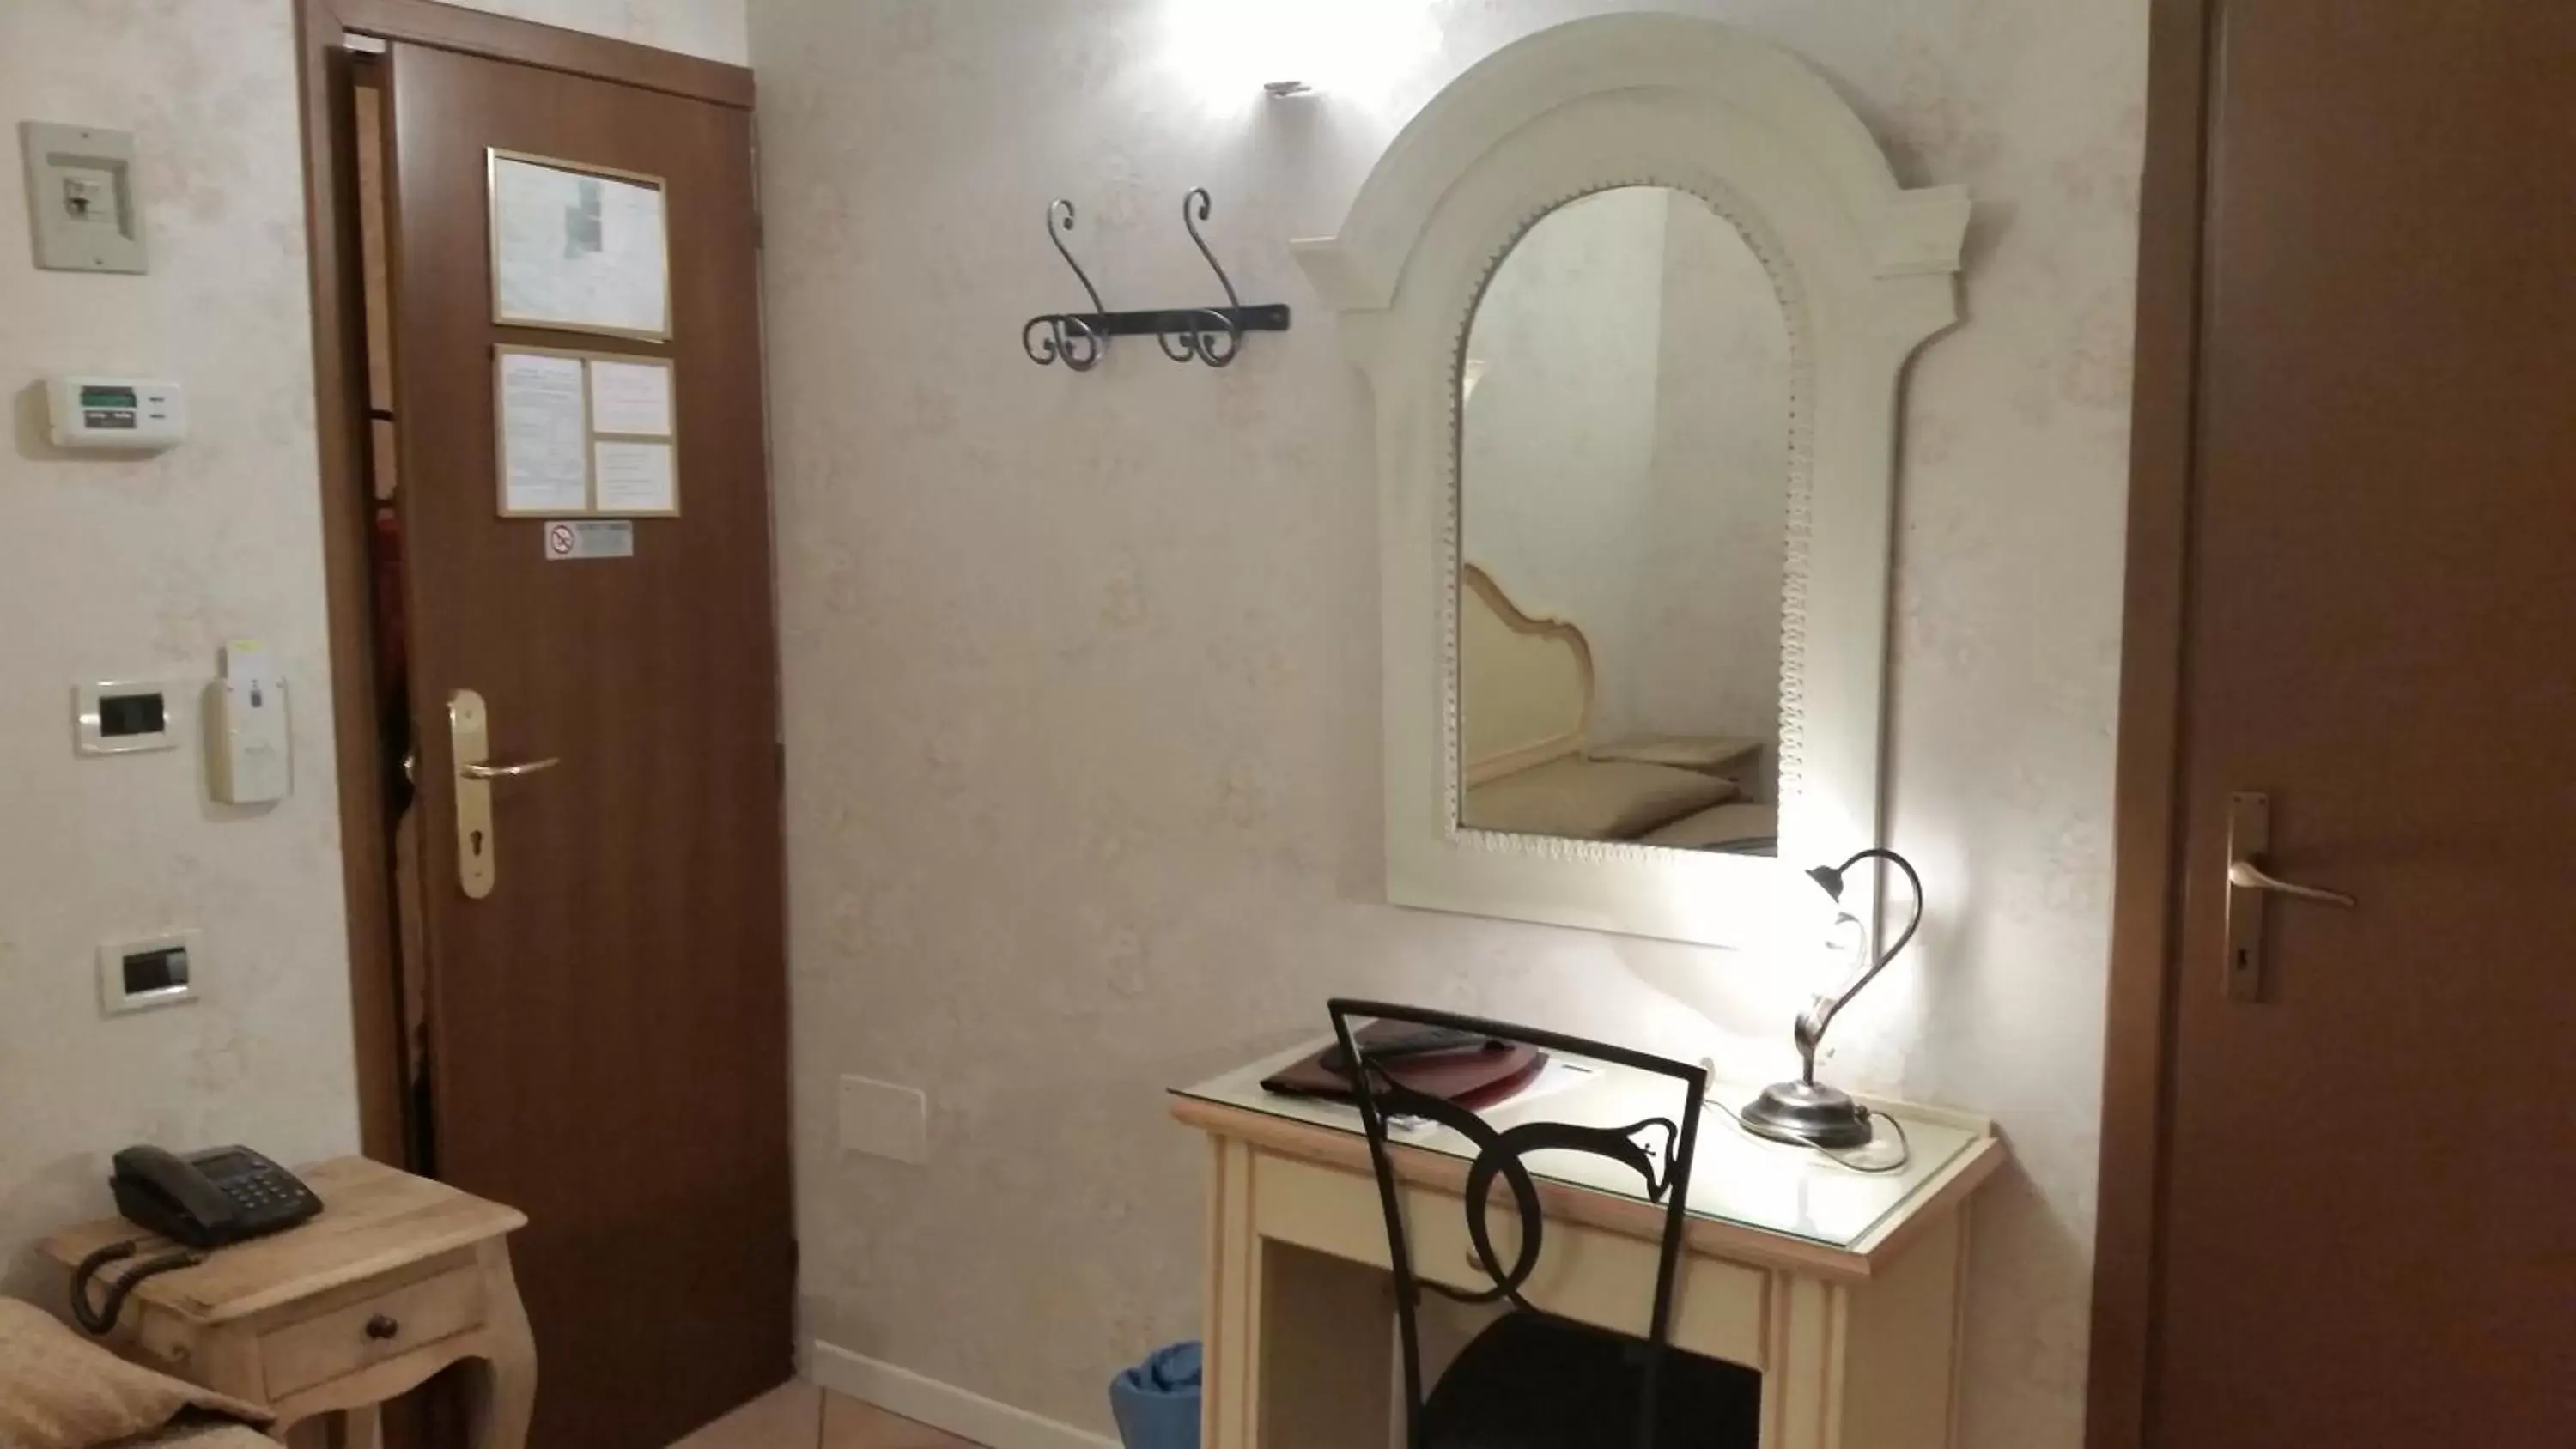 Bedroom, Bathroom in Hotel Tintoretto